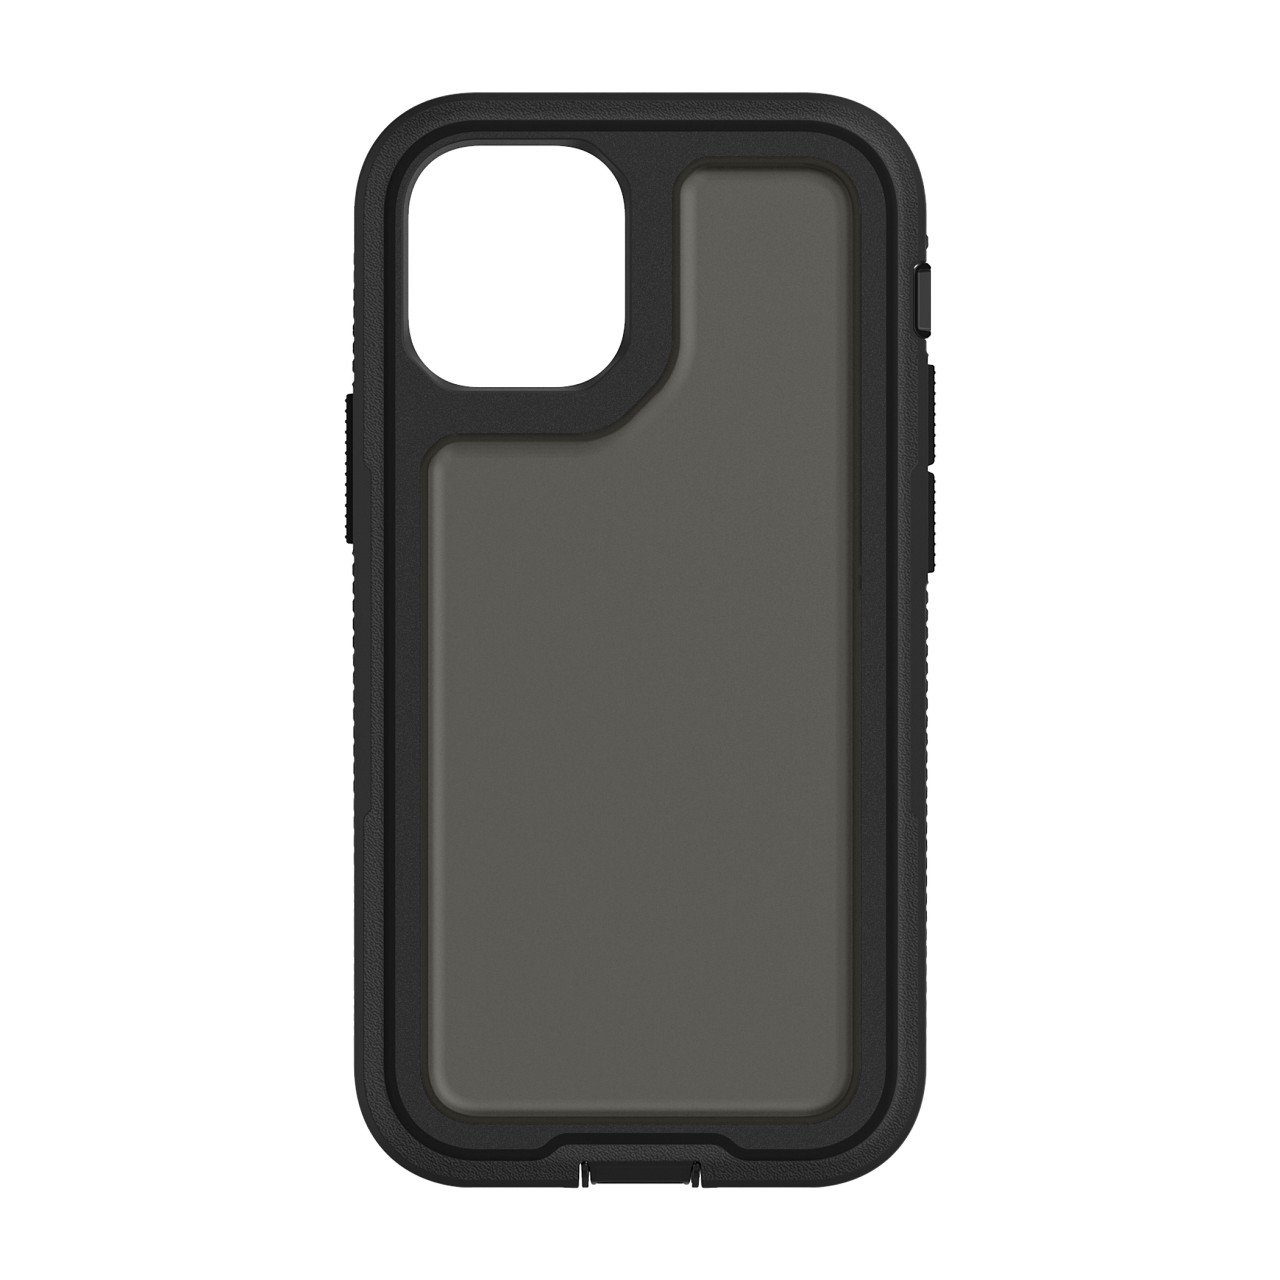 Griffin Survivor Extreme mobile phone case 13.7 cm (5.4") Cover Black